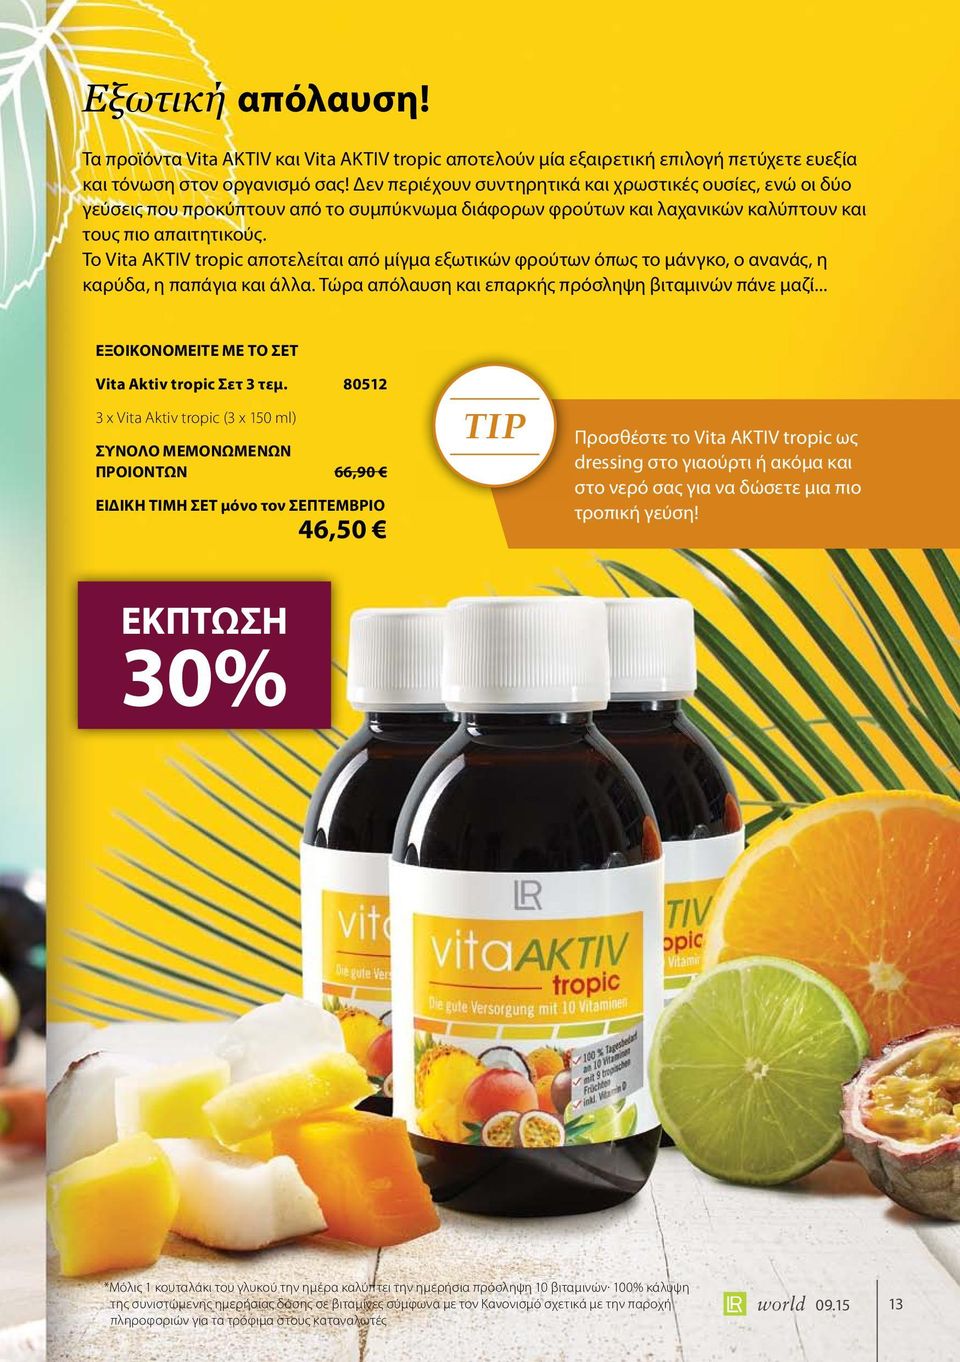 Το Vita AKTIV tropic αποτελείται από μίγμα εξωτικών φρούτων όπως το μάνγκο, ο ανανάς, η καρύδα, η παπάγια και άλλα. Τώρα απόλαυση και επαρκής πρόσληψη βιταμινών πάνε μαζί... Vita Aktiv tropic Σετ 3 τεμ.